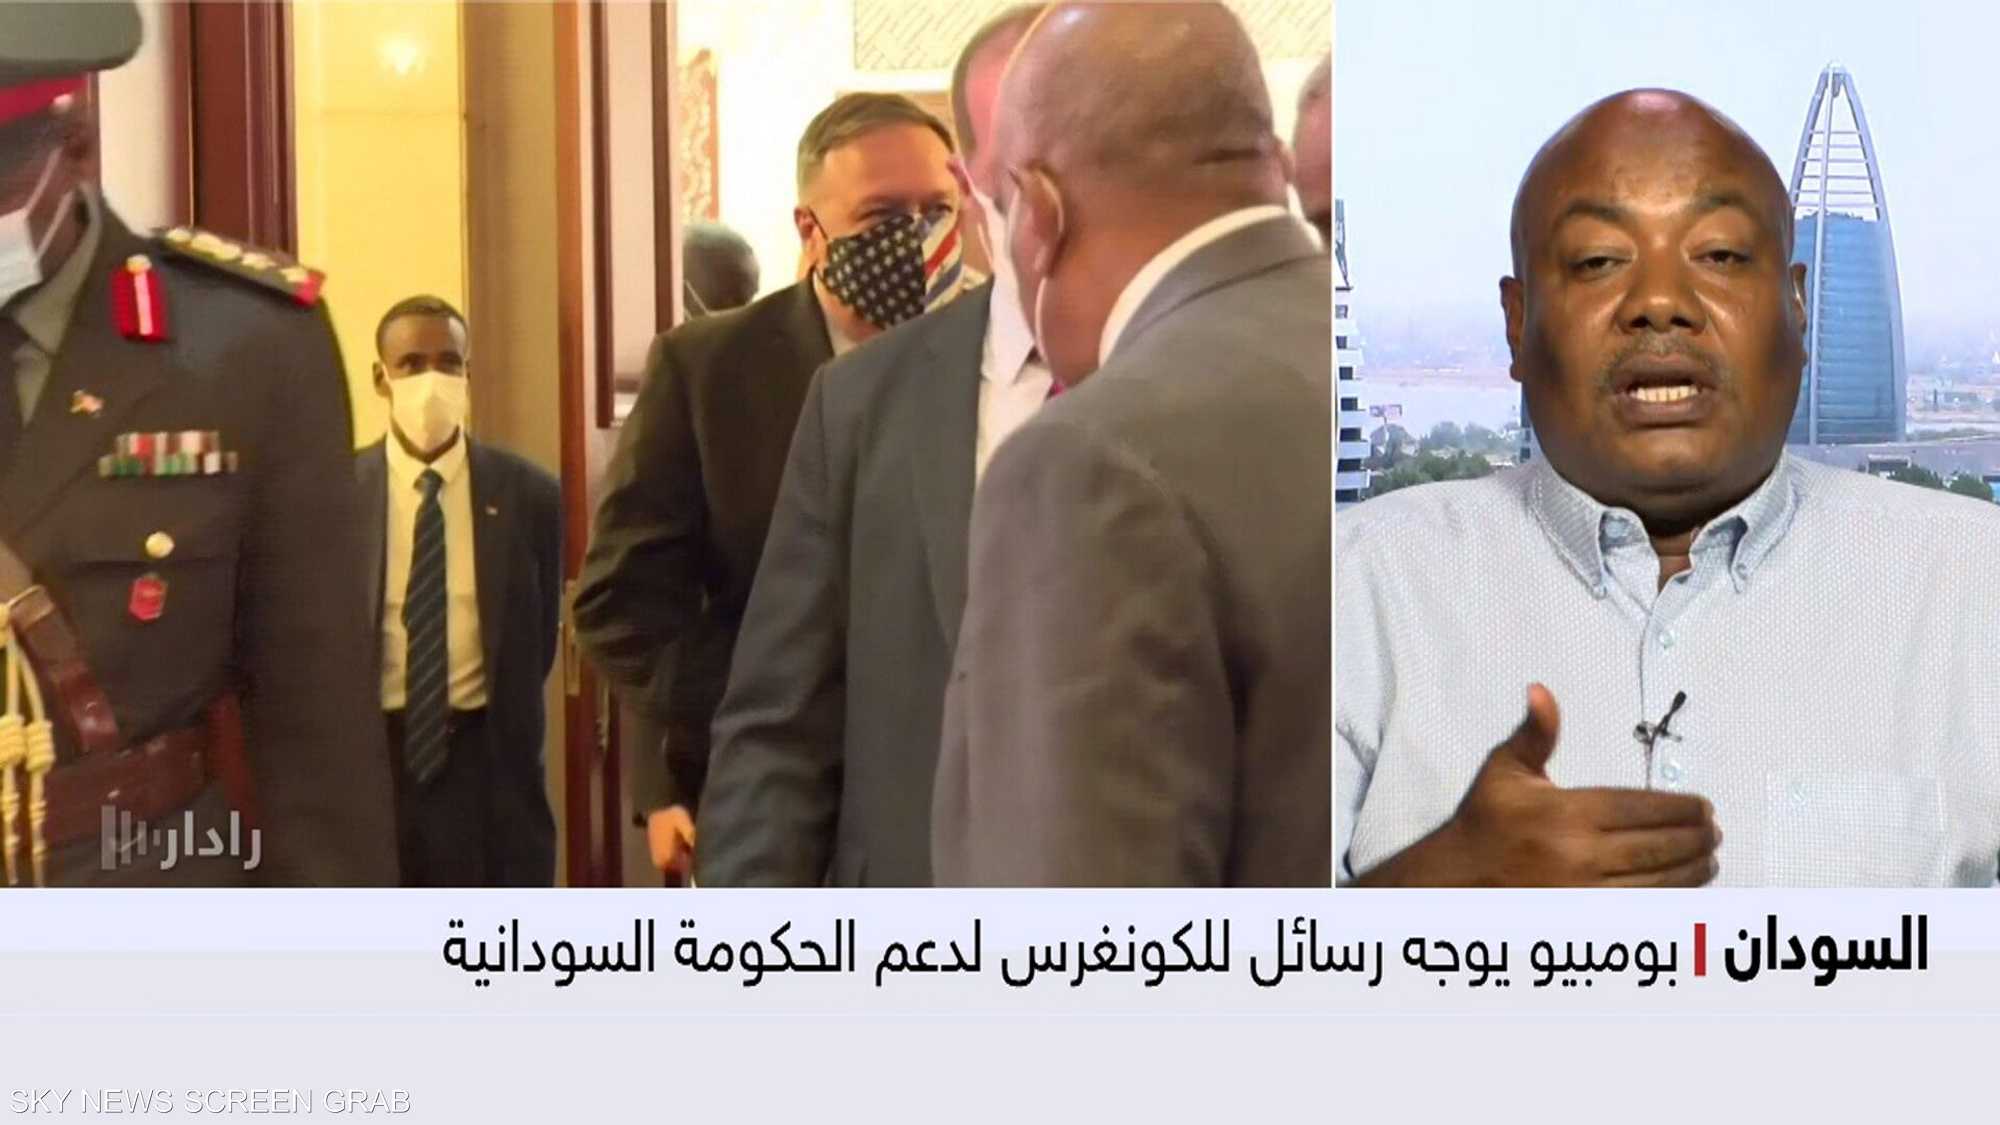 واشنطن تسعى لشطب السودان من قائمة "الإرهاب" قبل نوفمبر